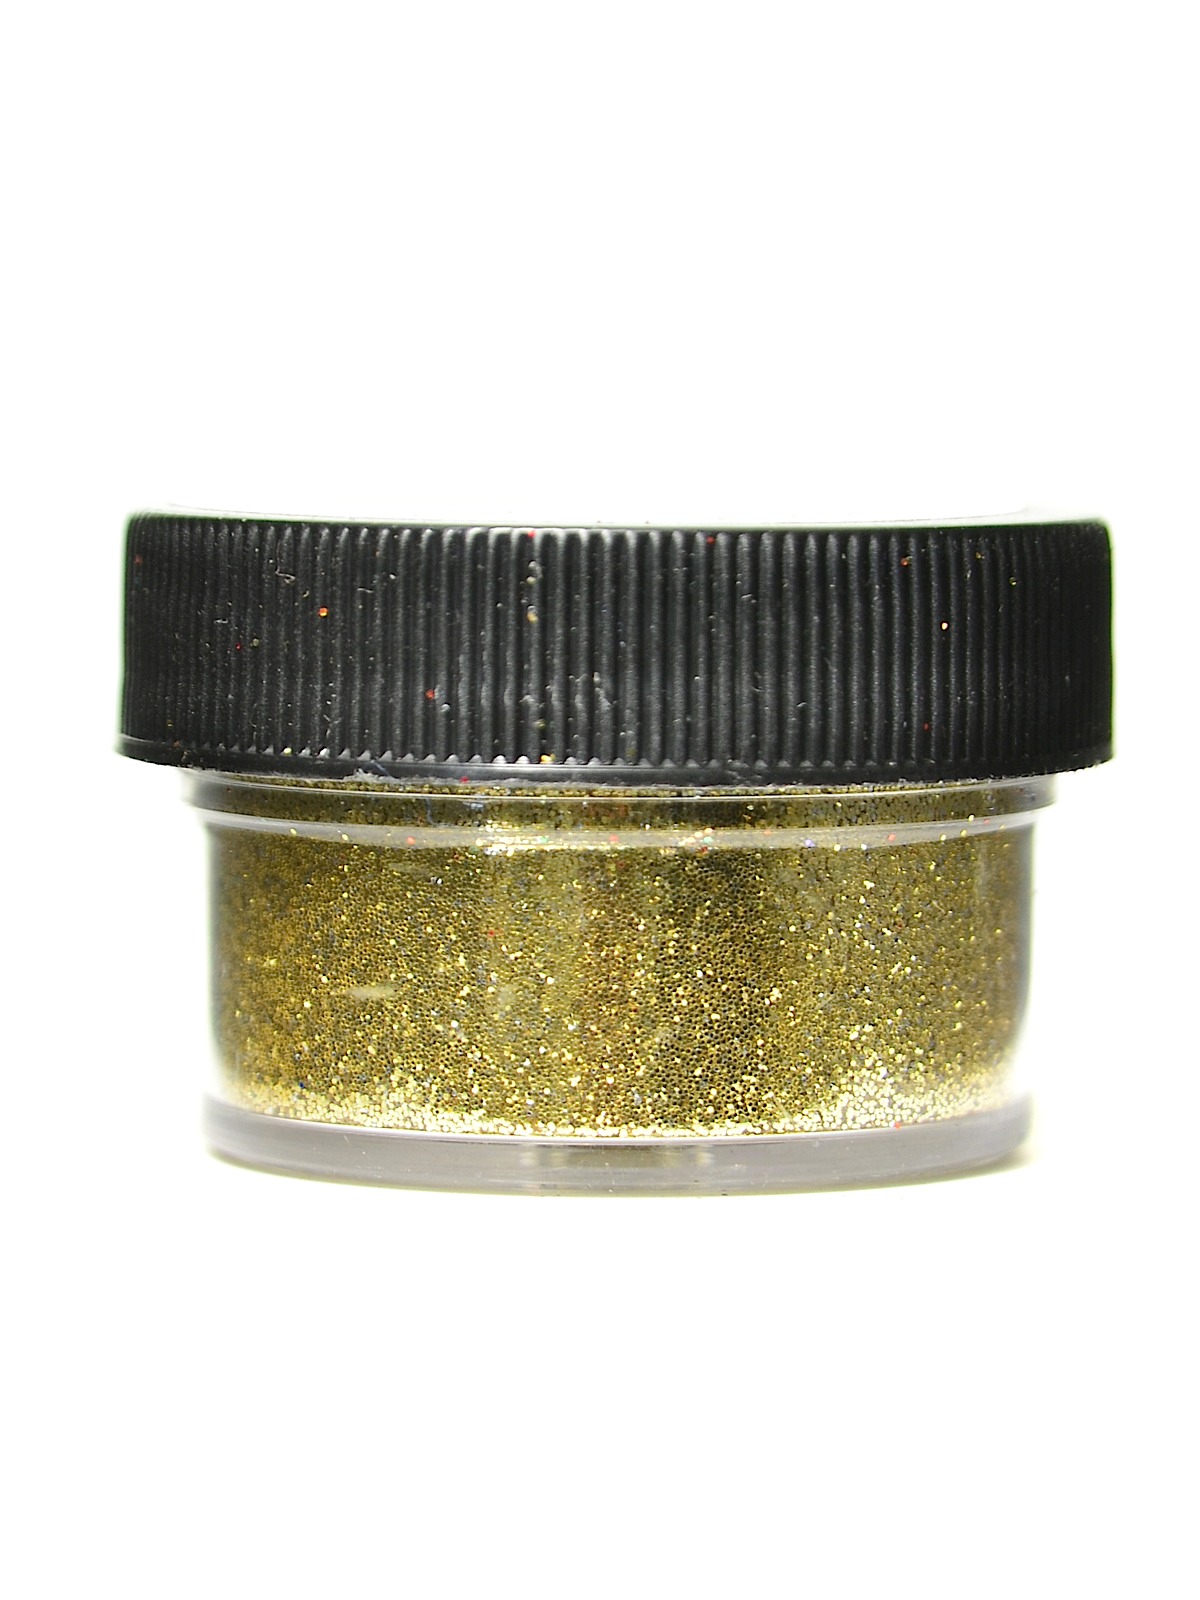 Ultrafine Opaque Glitter Light Gold 1 2 Oz. Jar